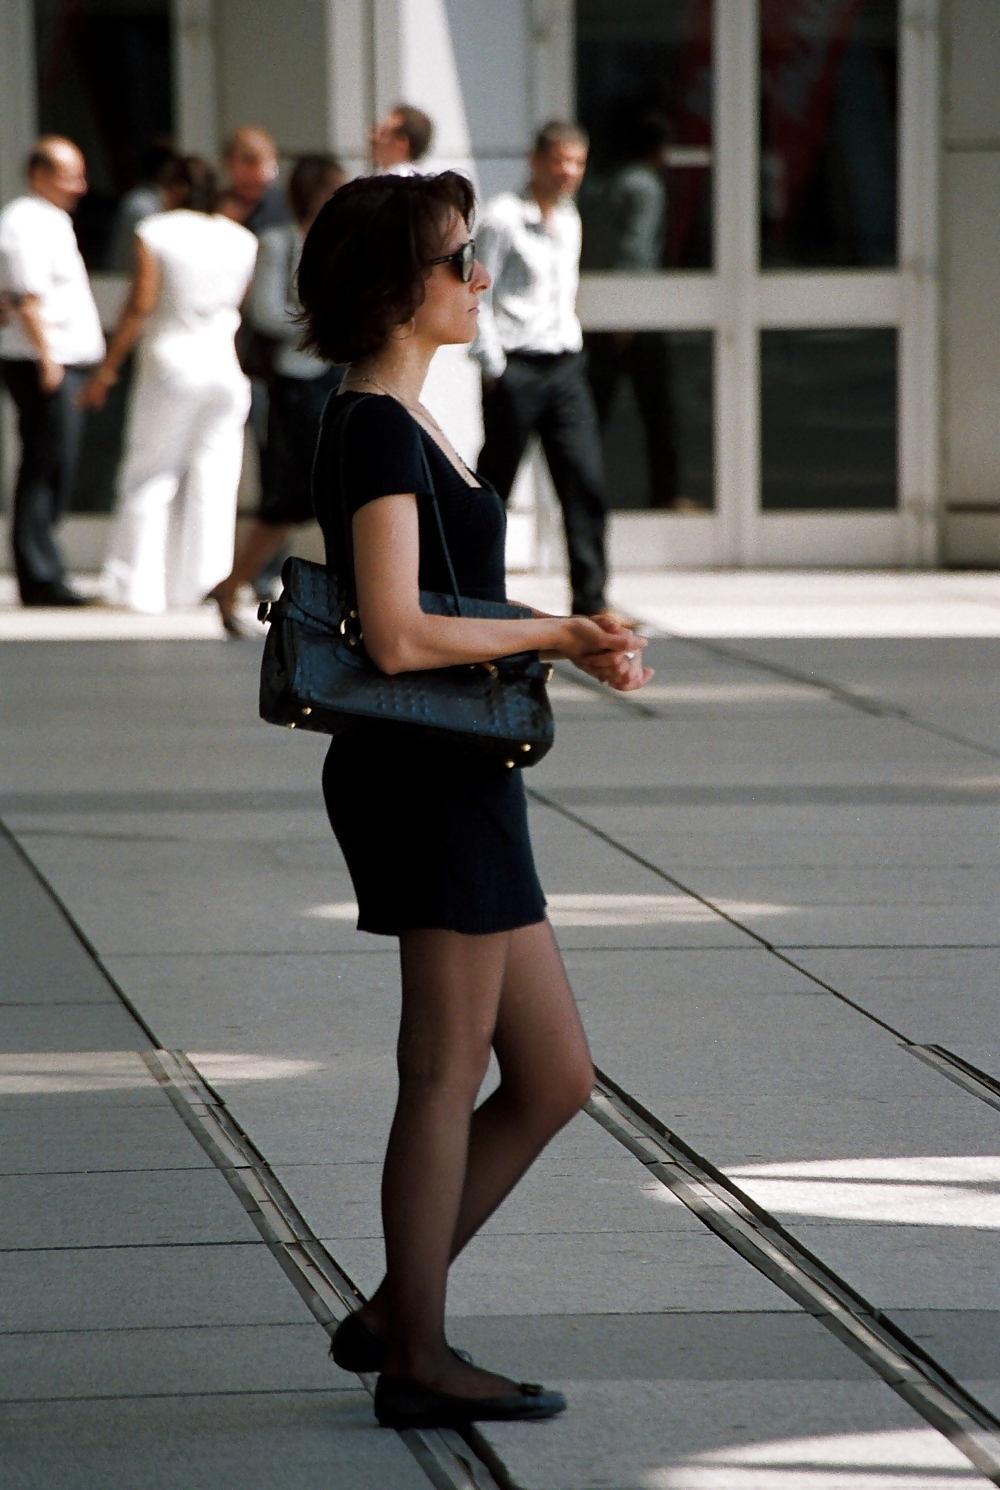 Stocking girls in public. Paris, june 2008 #35789473